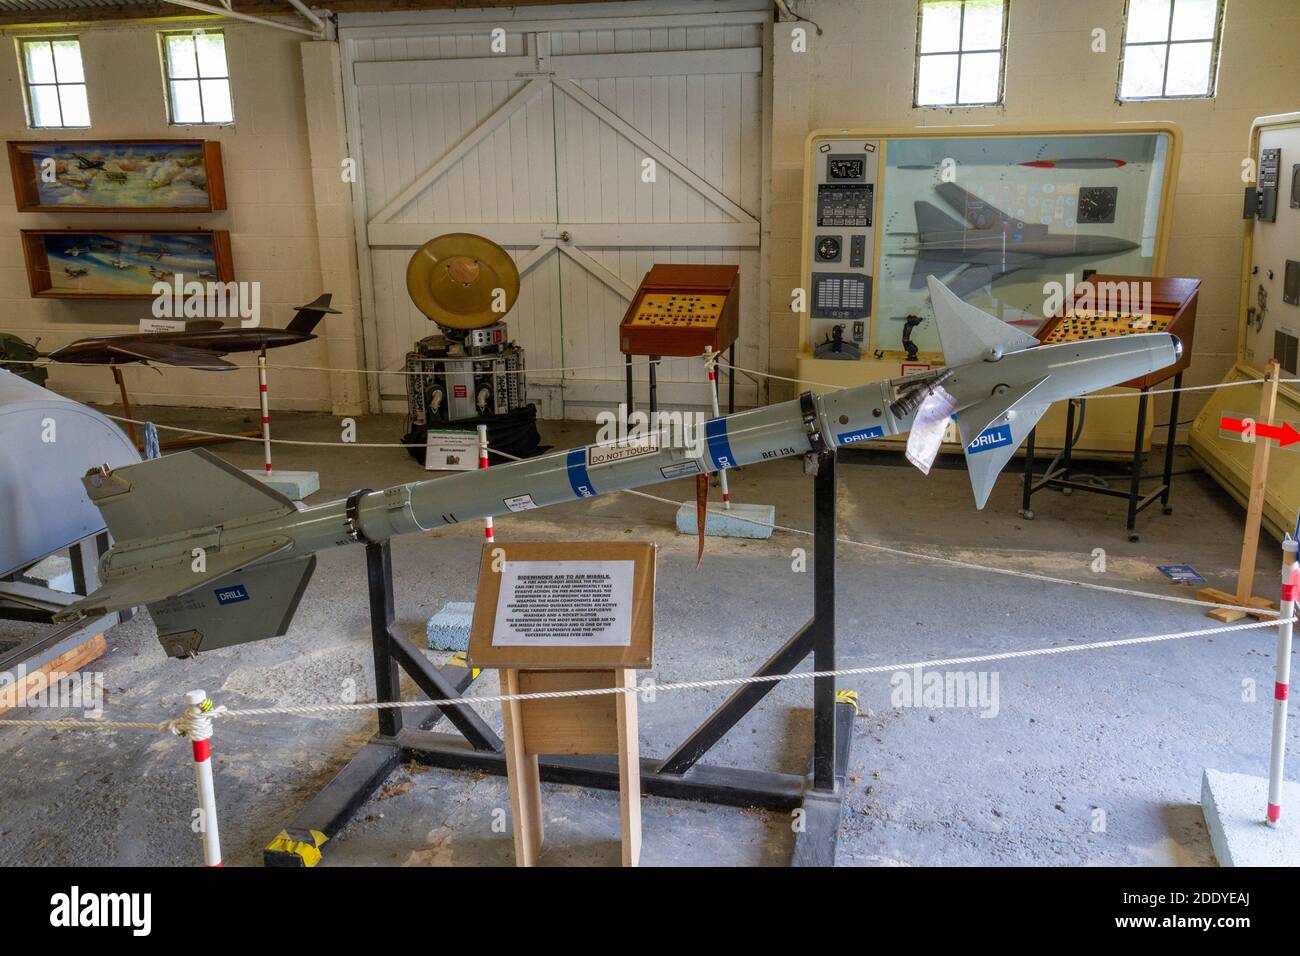 Un misil aire-aire Sidewinder, el centro de visitantes de Thorpe Camp, un cuartel de la Royal Air Force de la Segunda Guerra Mundial, Lincolnshire, Reino Unido. Foto de stock